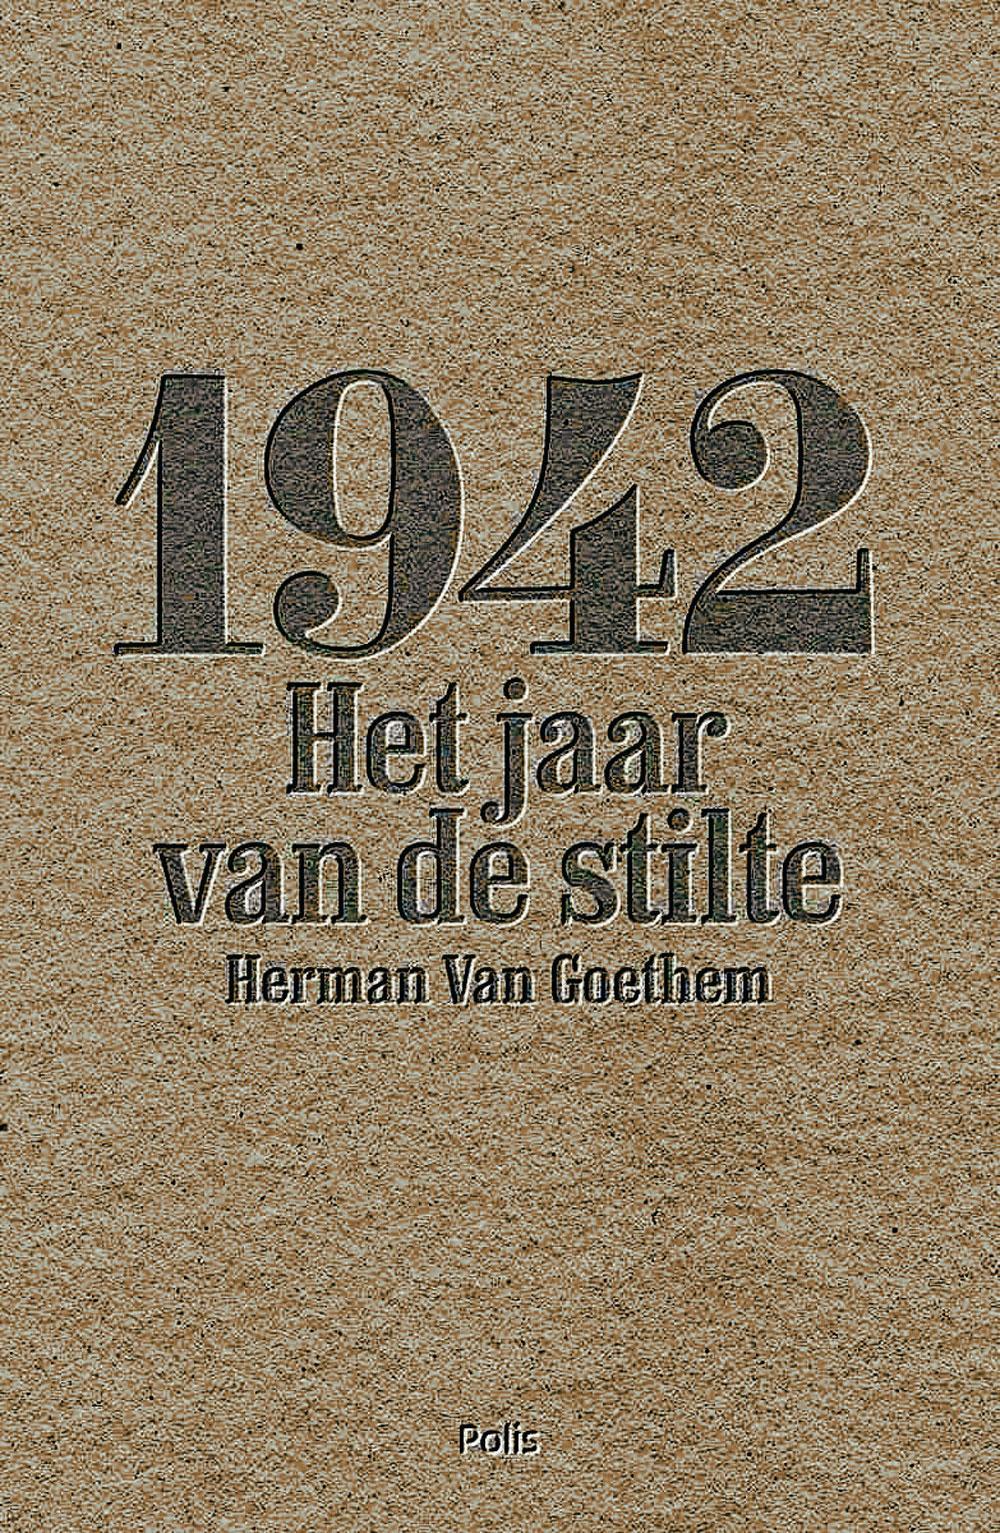 Herman Van Goethem, 1942 - Het jaar van de stilte, Polis, 360 blz., 29,95 euro.